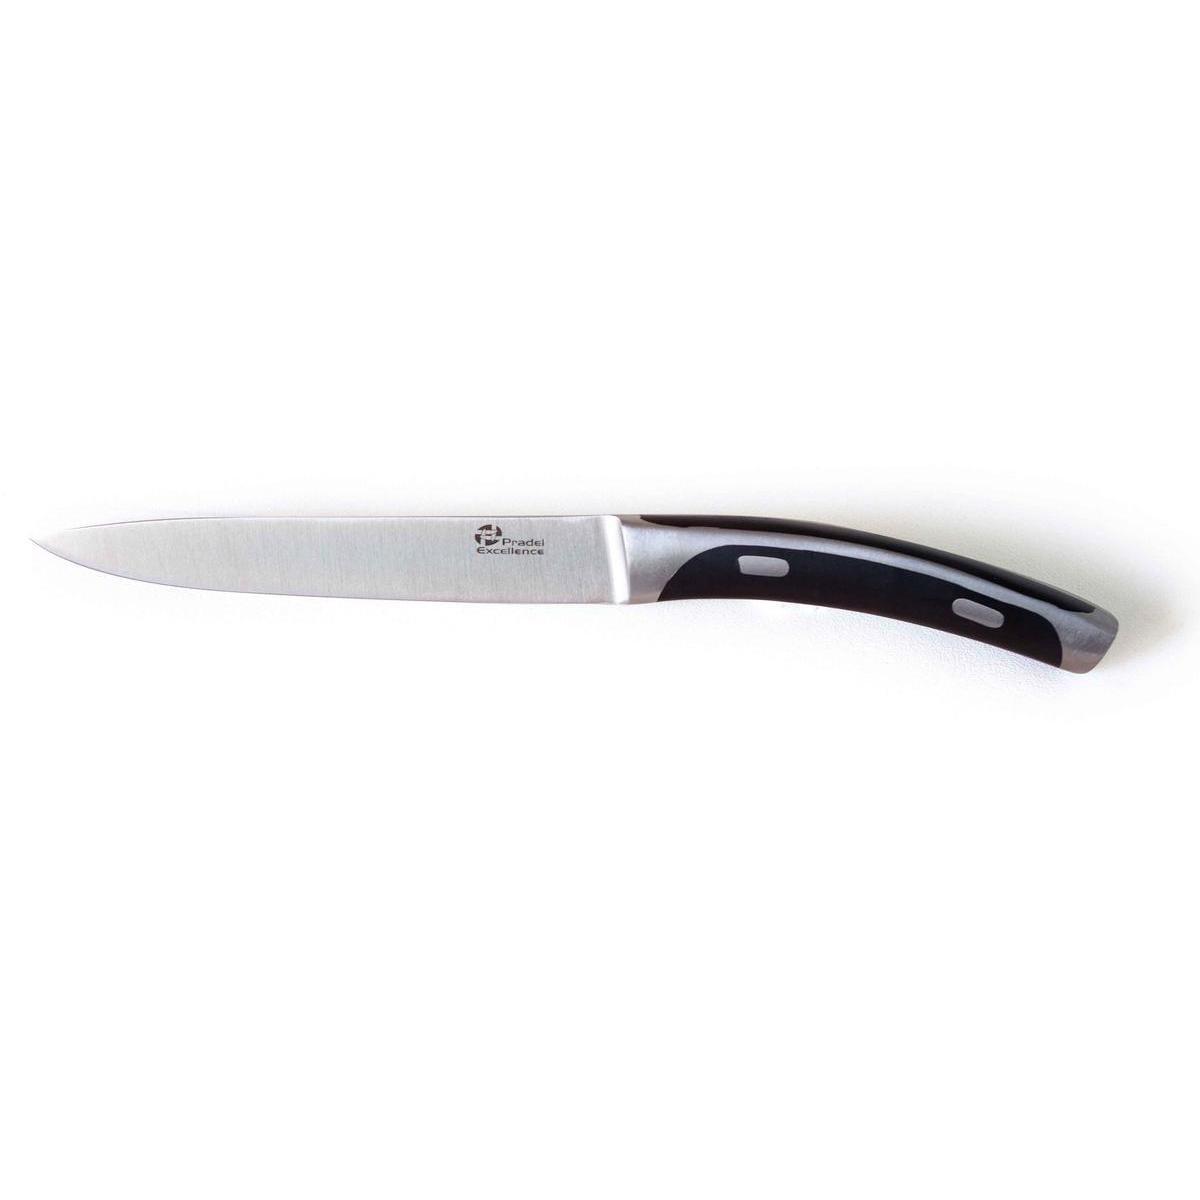 Couteau utilitaire - Inox et plastique - 23,8 cm - Noir